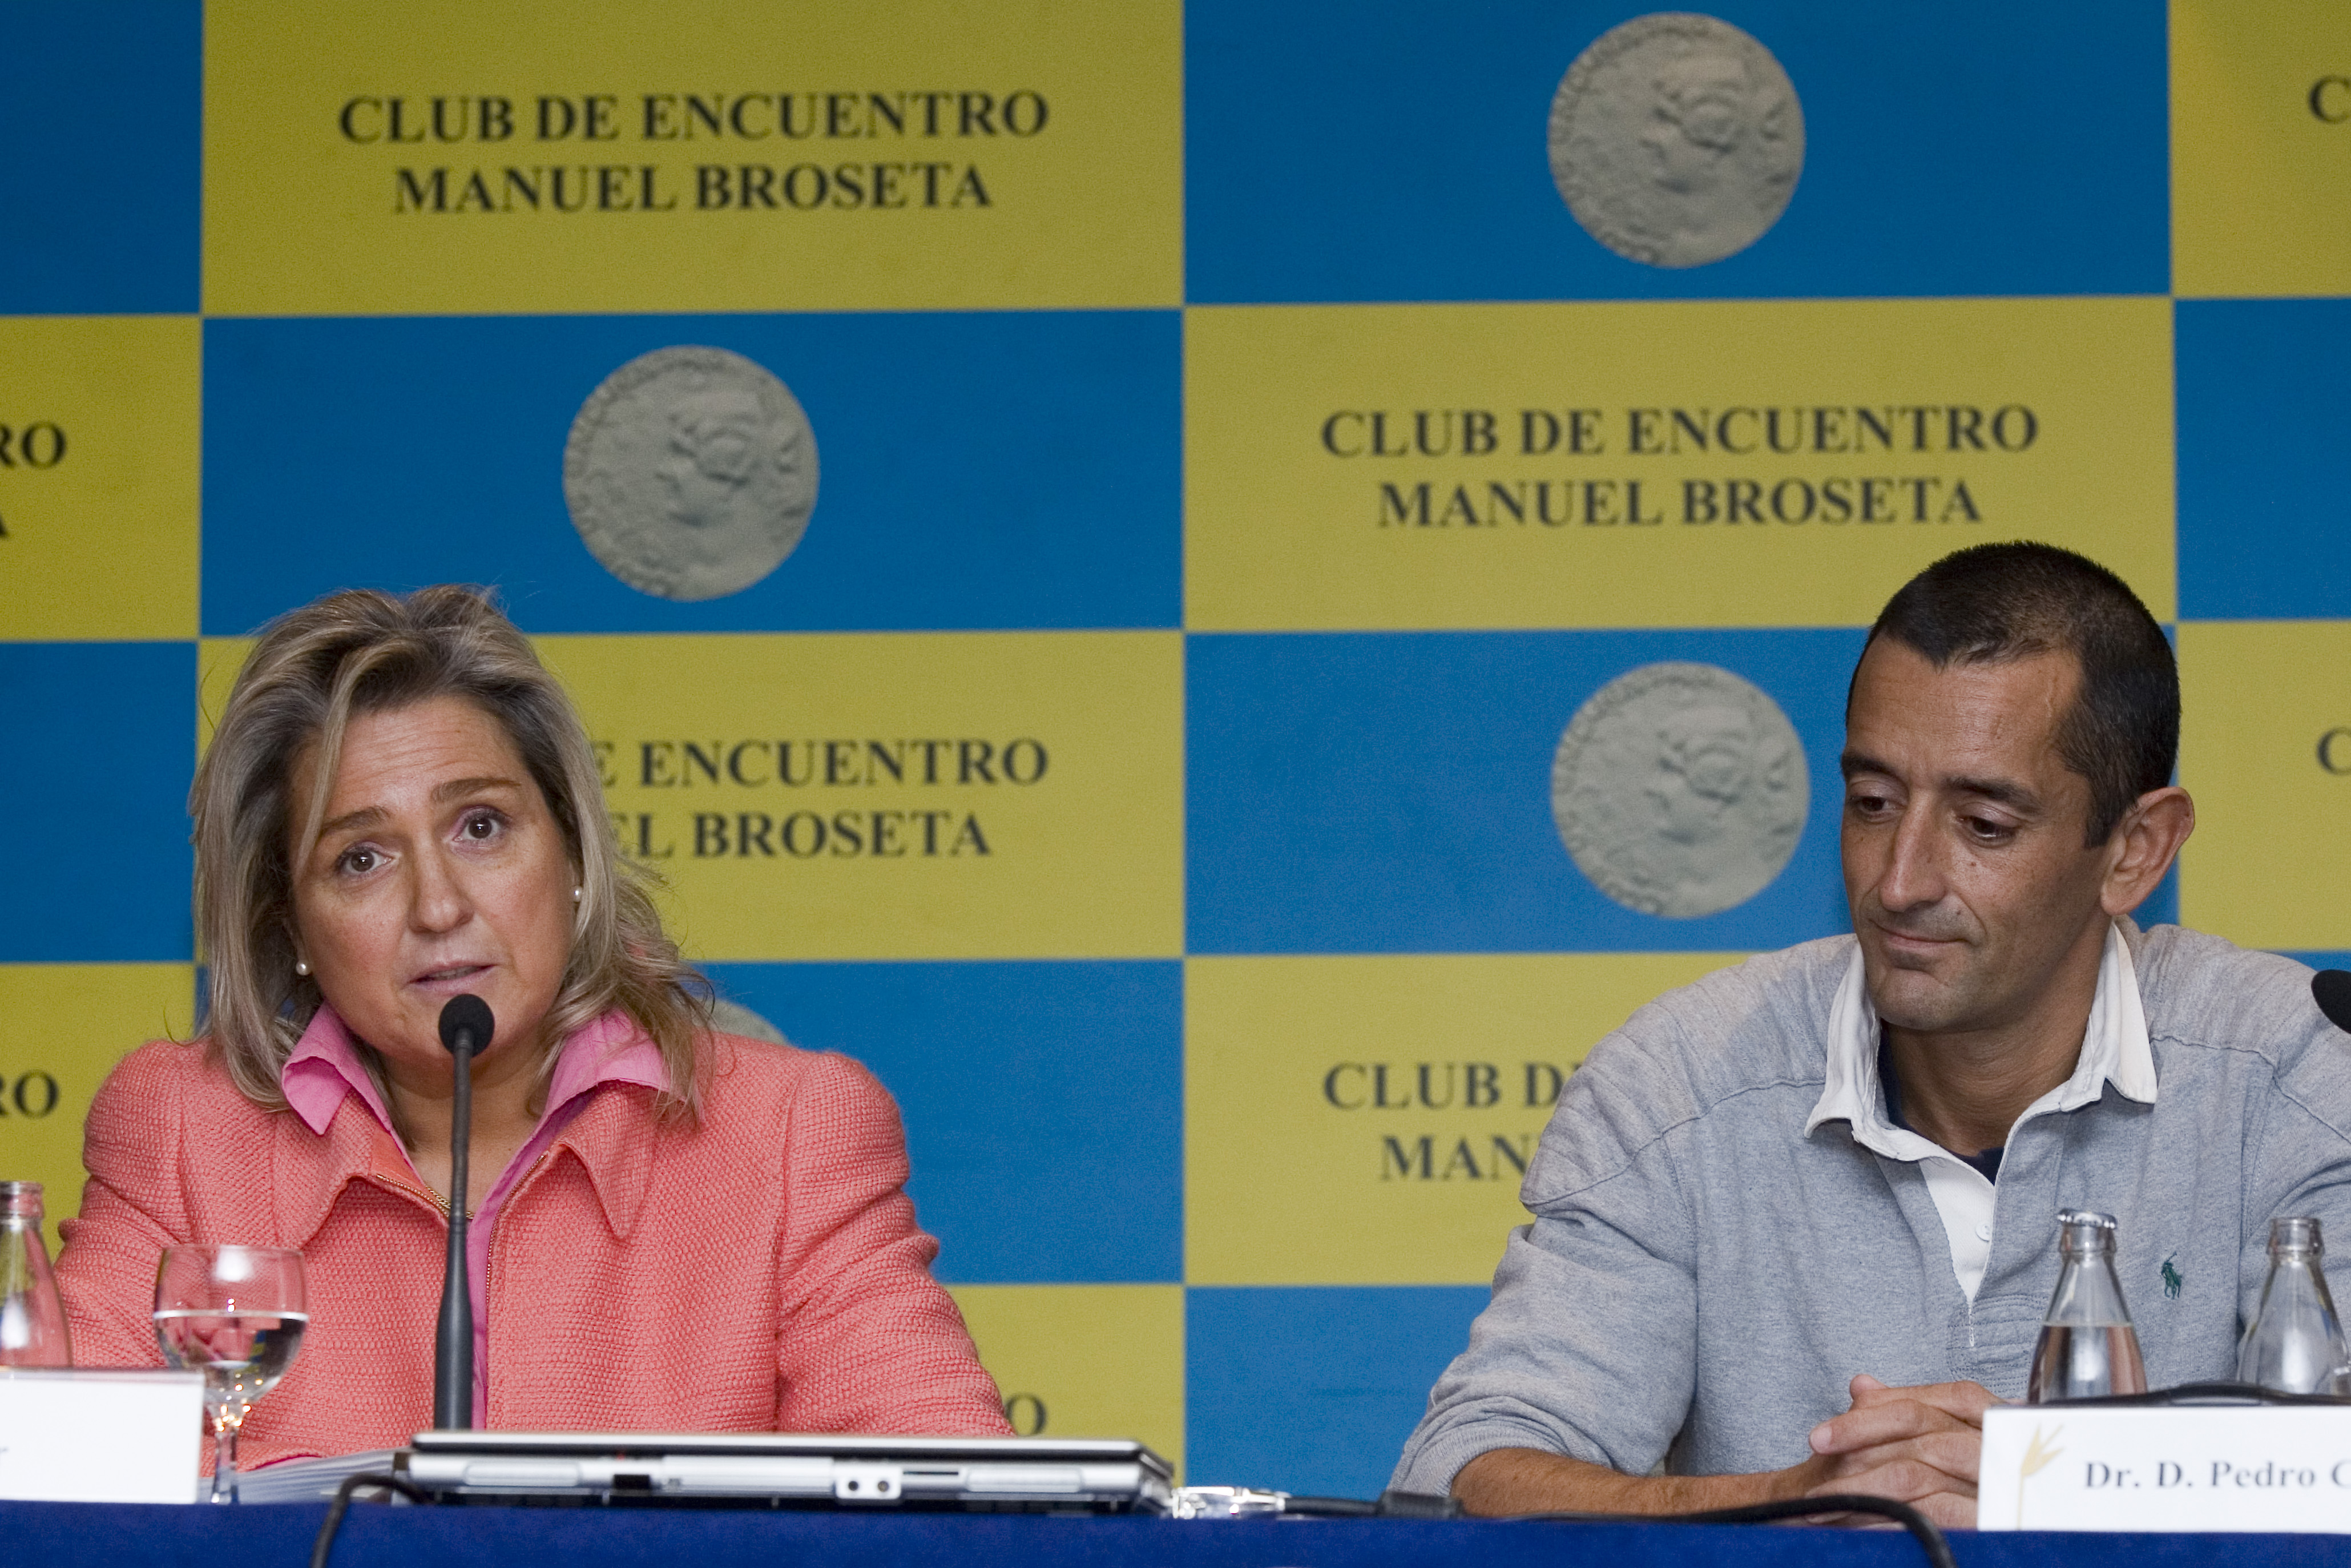 Club de encuentro Manuel Broseta